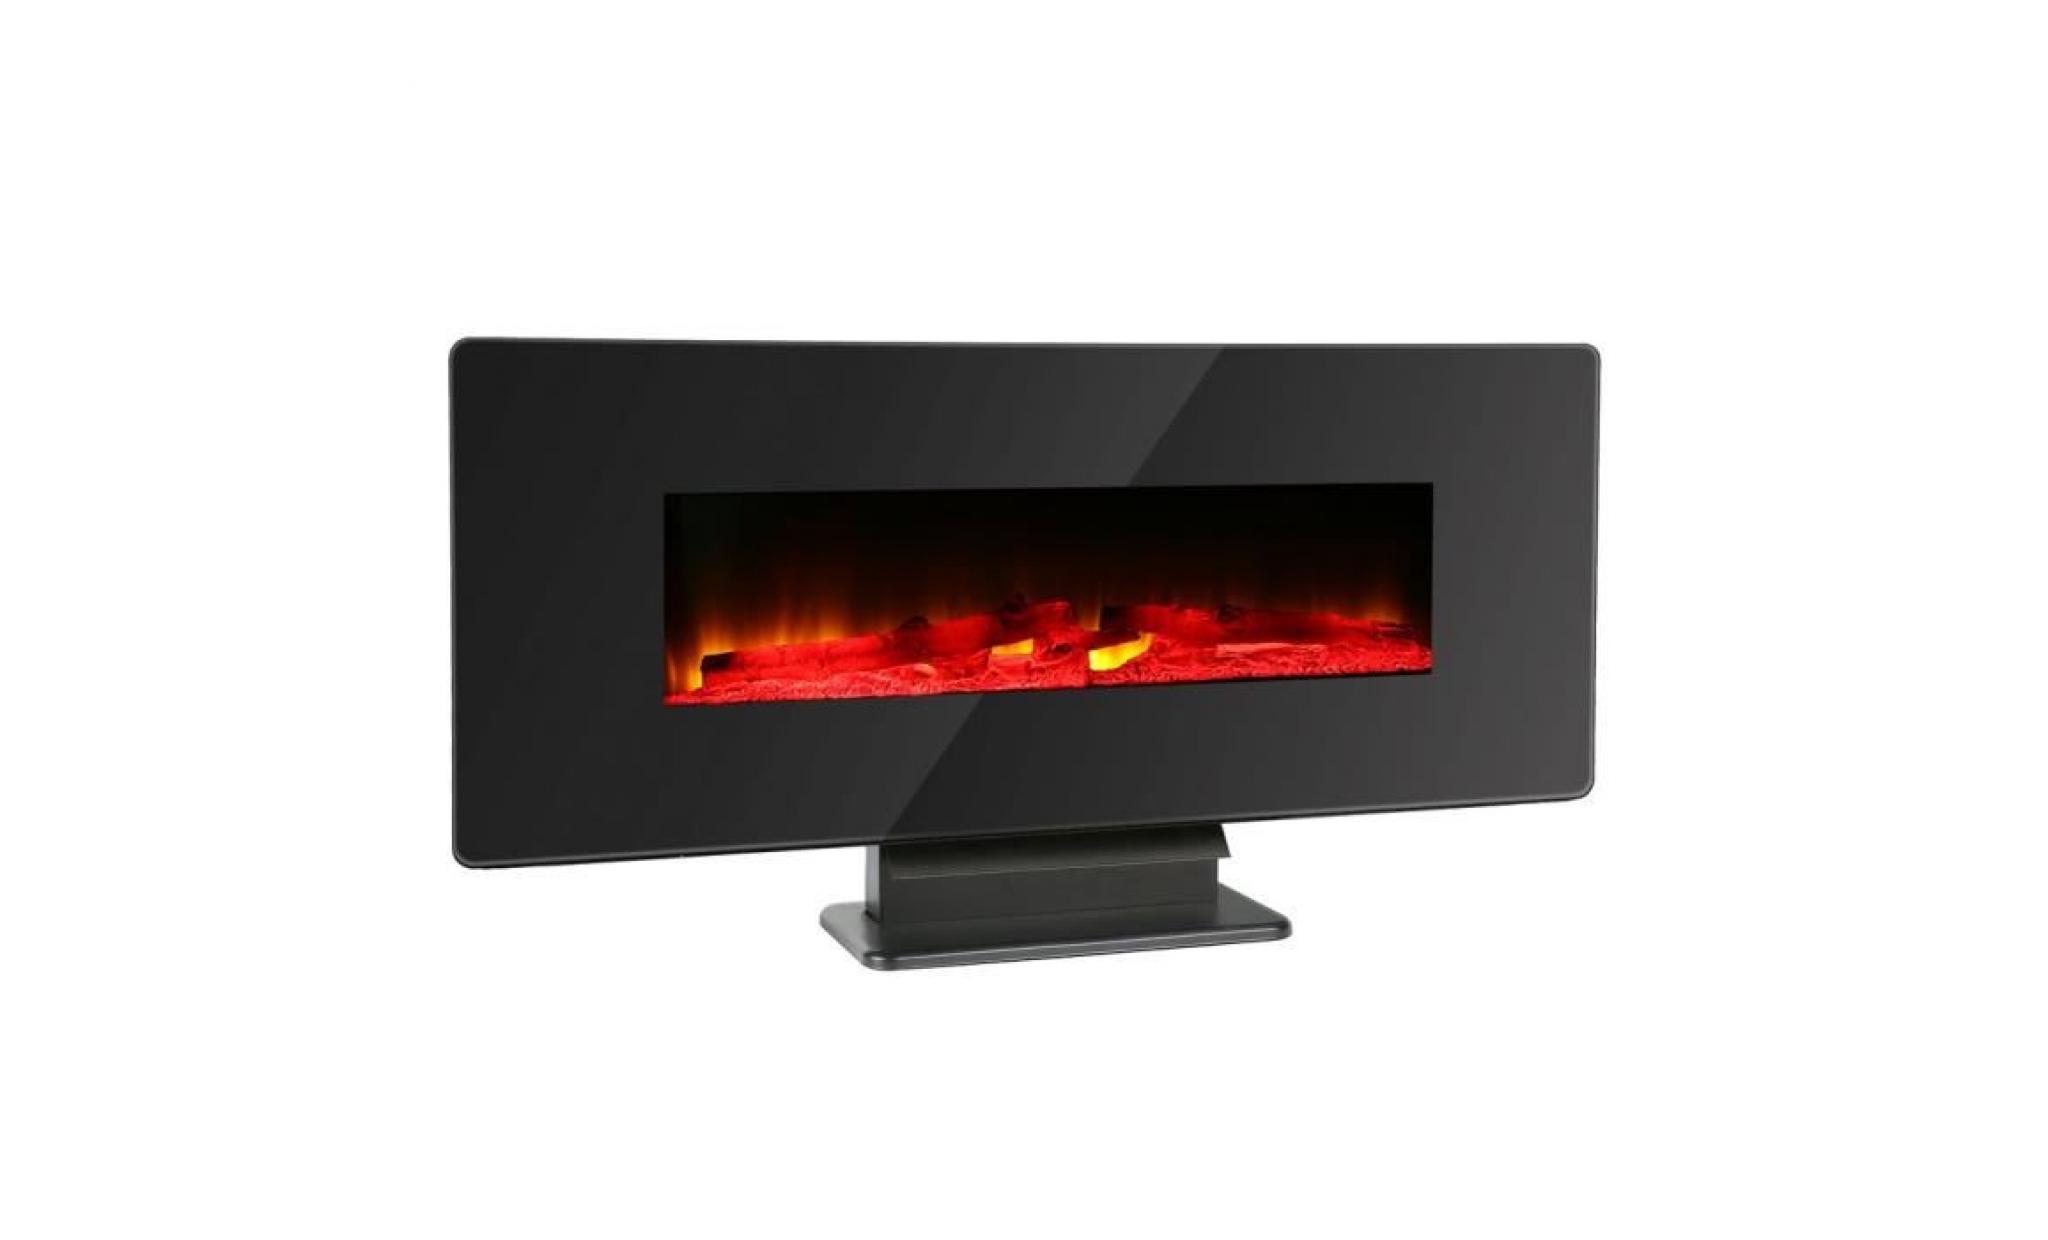 réchaud chauffage électrique réchauffeur effet flamme brûlante 114 x 23.8 x 51.5cm noir modern design